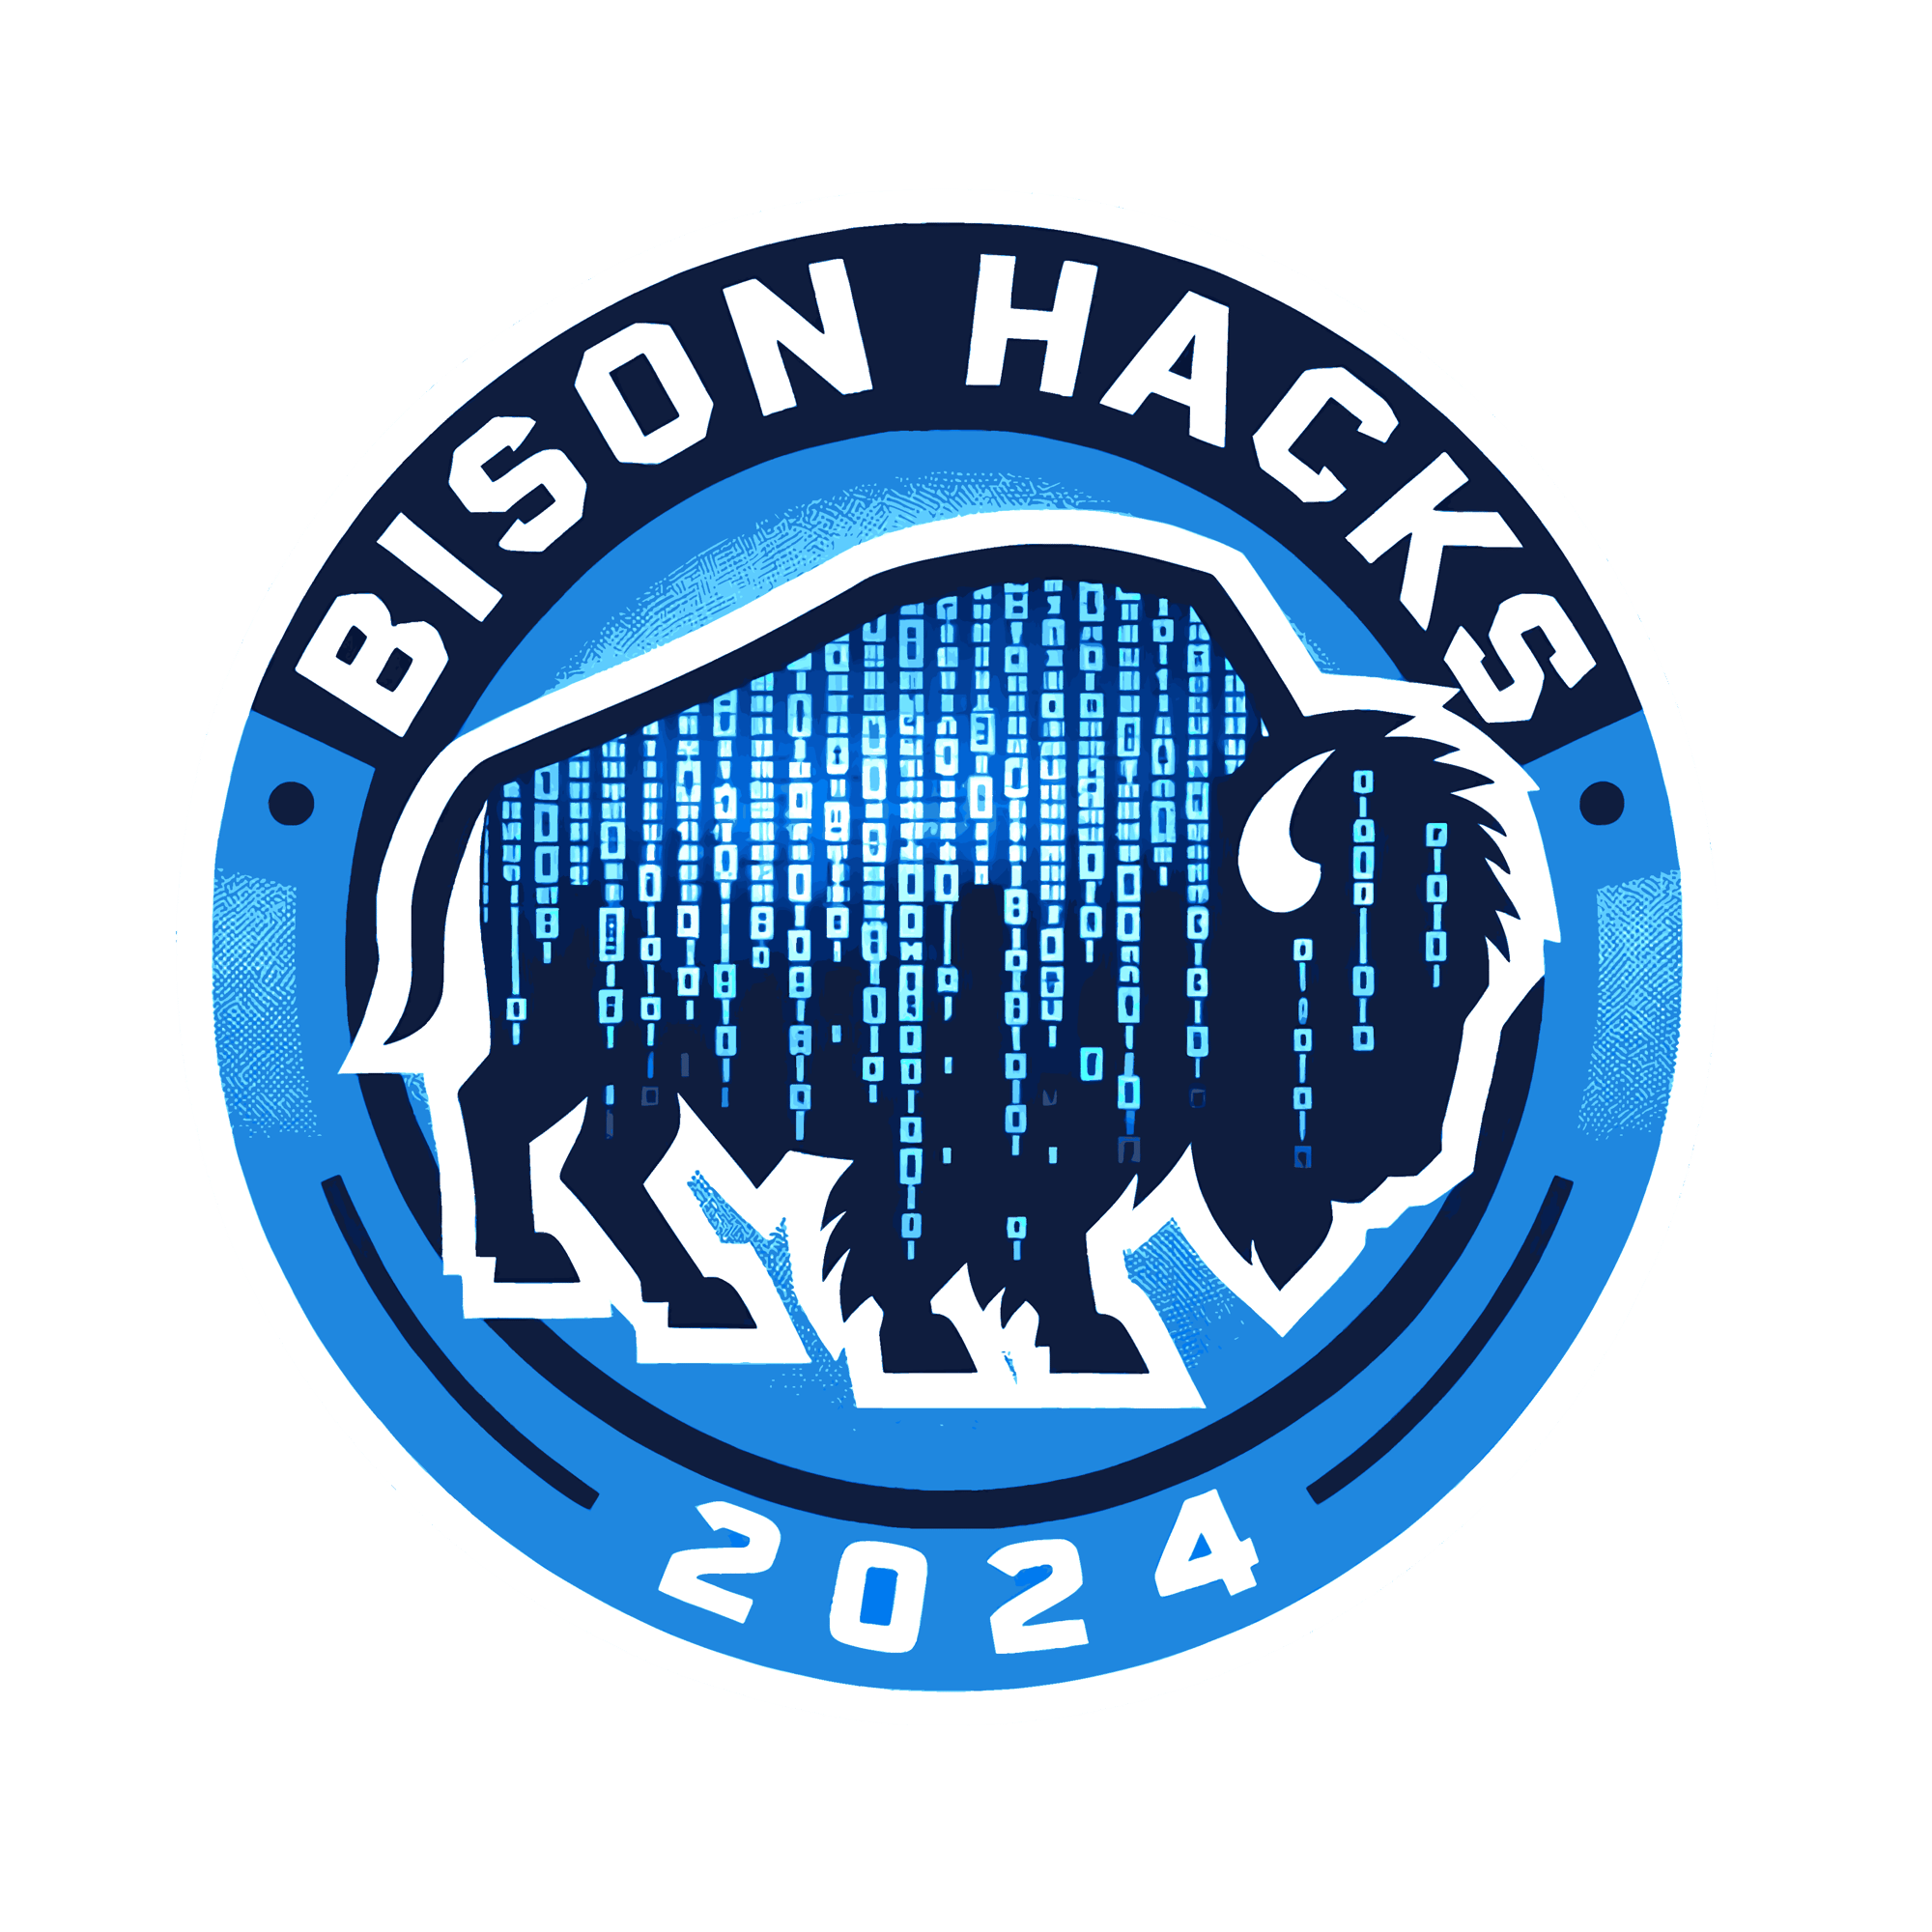 DALL·E 2023-10-26 09.20.27 - Vector art of a BisonHacks emblem